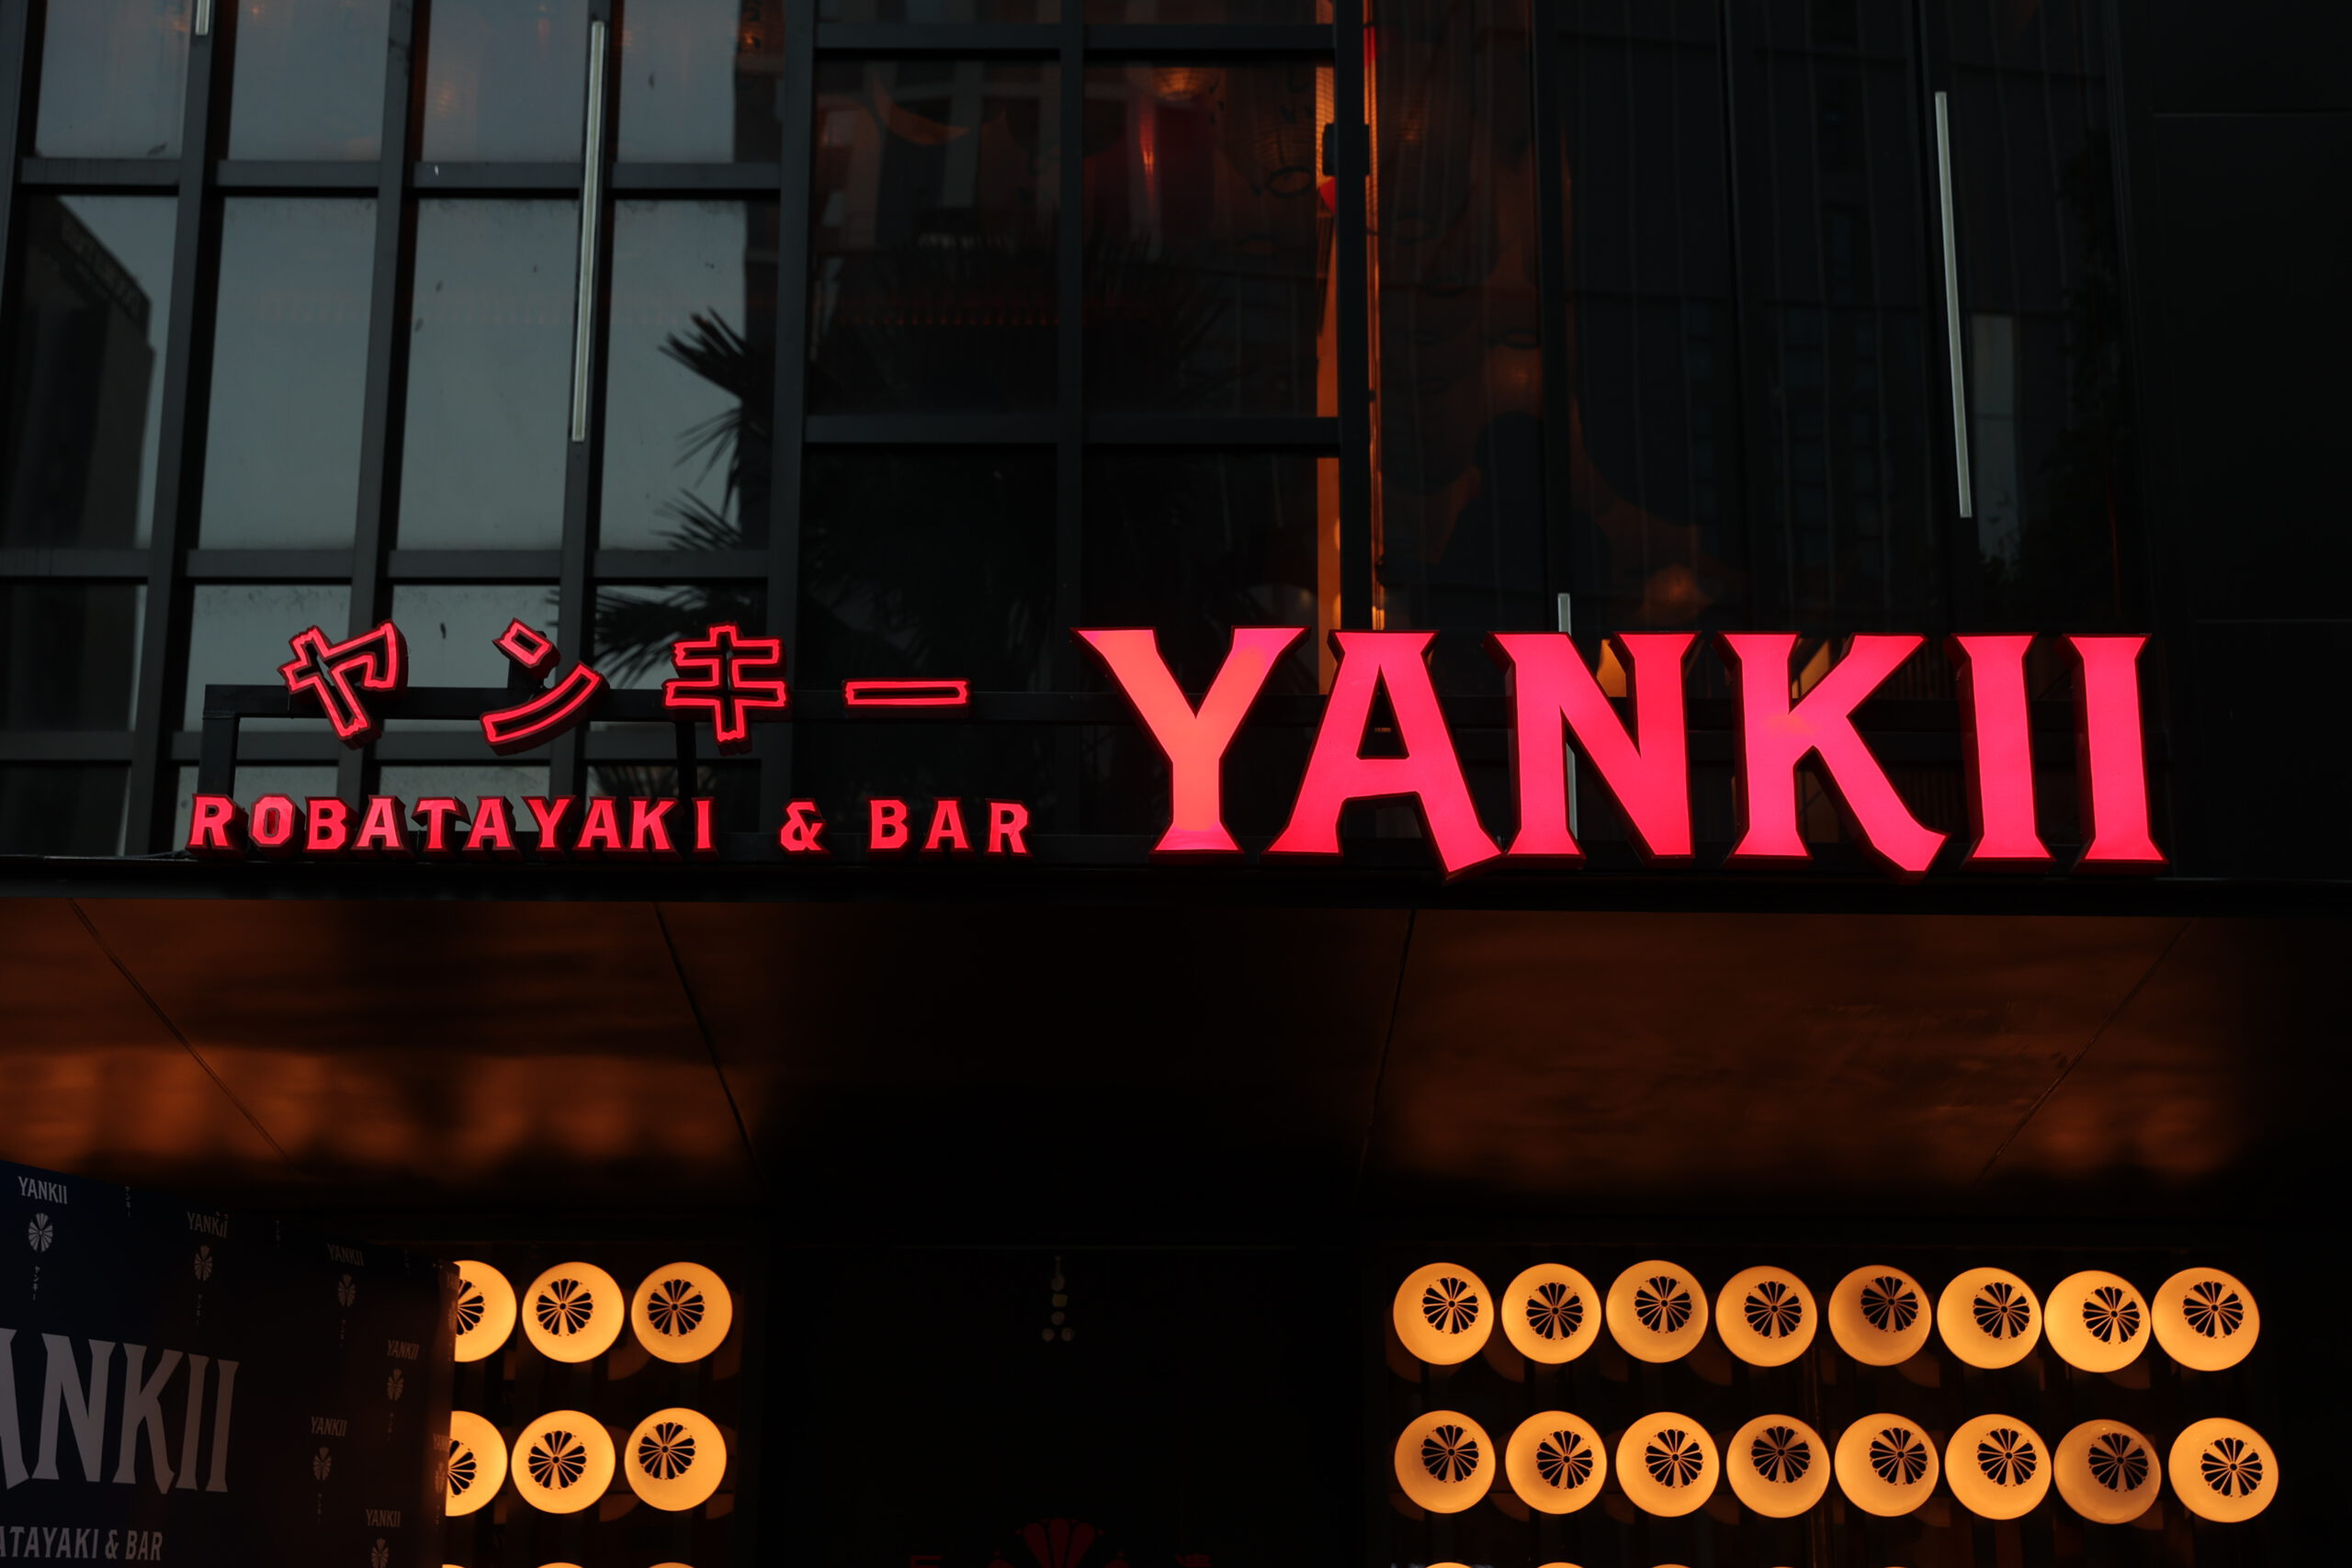 Yankii Robatayaki and Bar